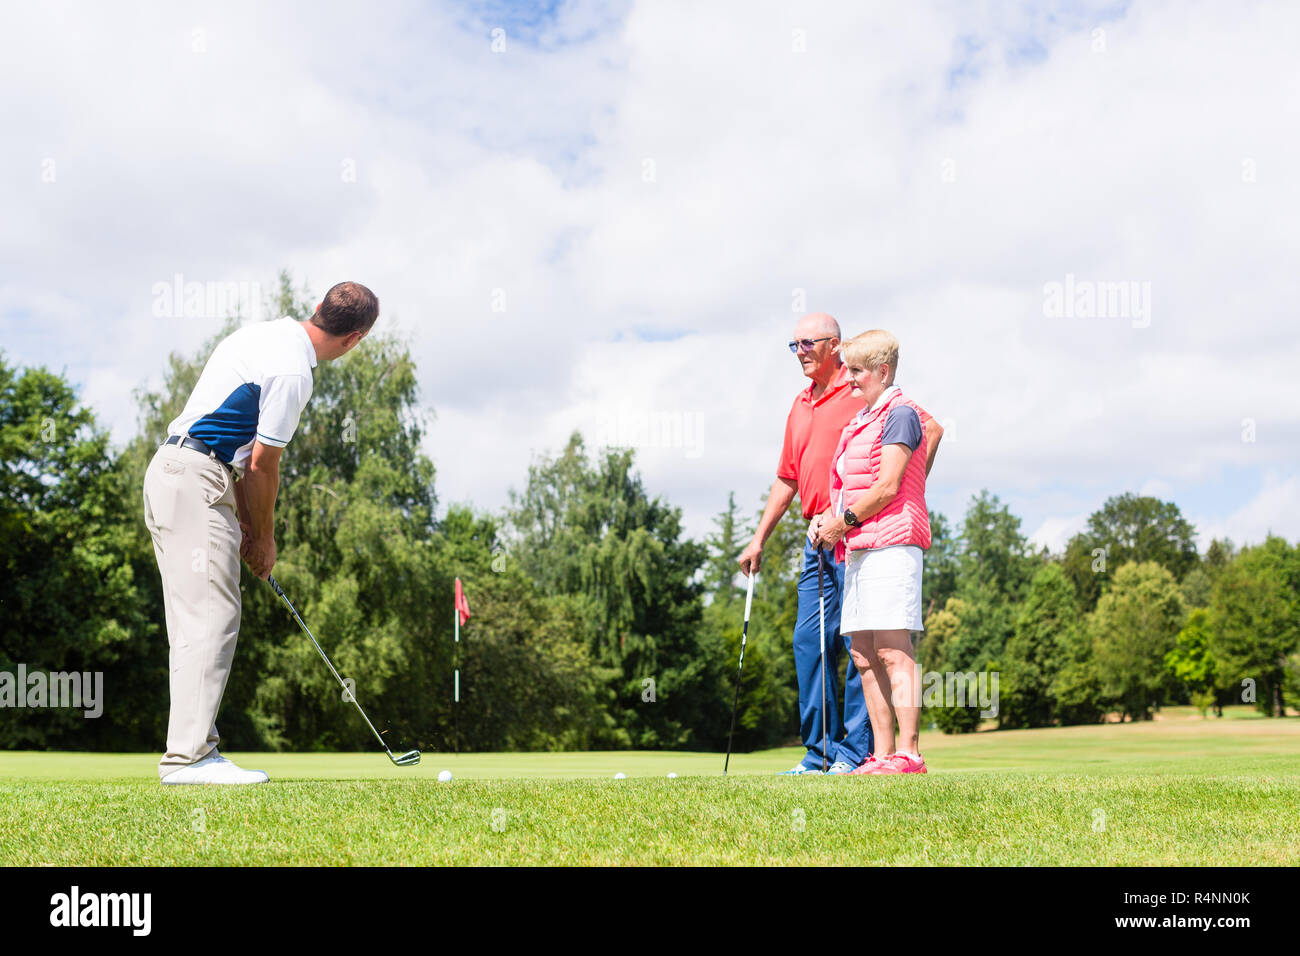 La pratique de ce sport golf pro avec des cadres supérieurs et l'homme femme Banque D'Images